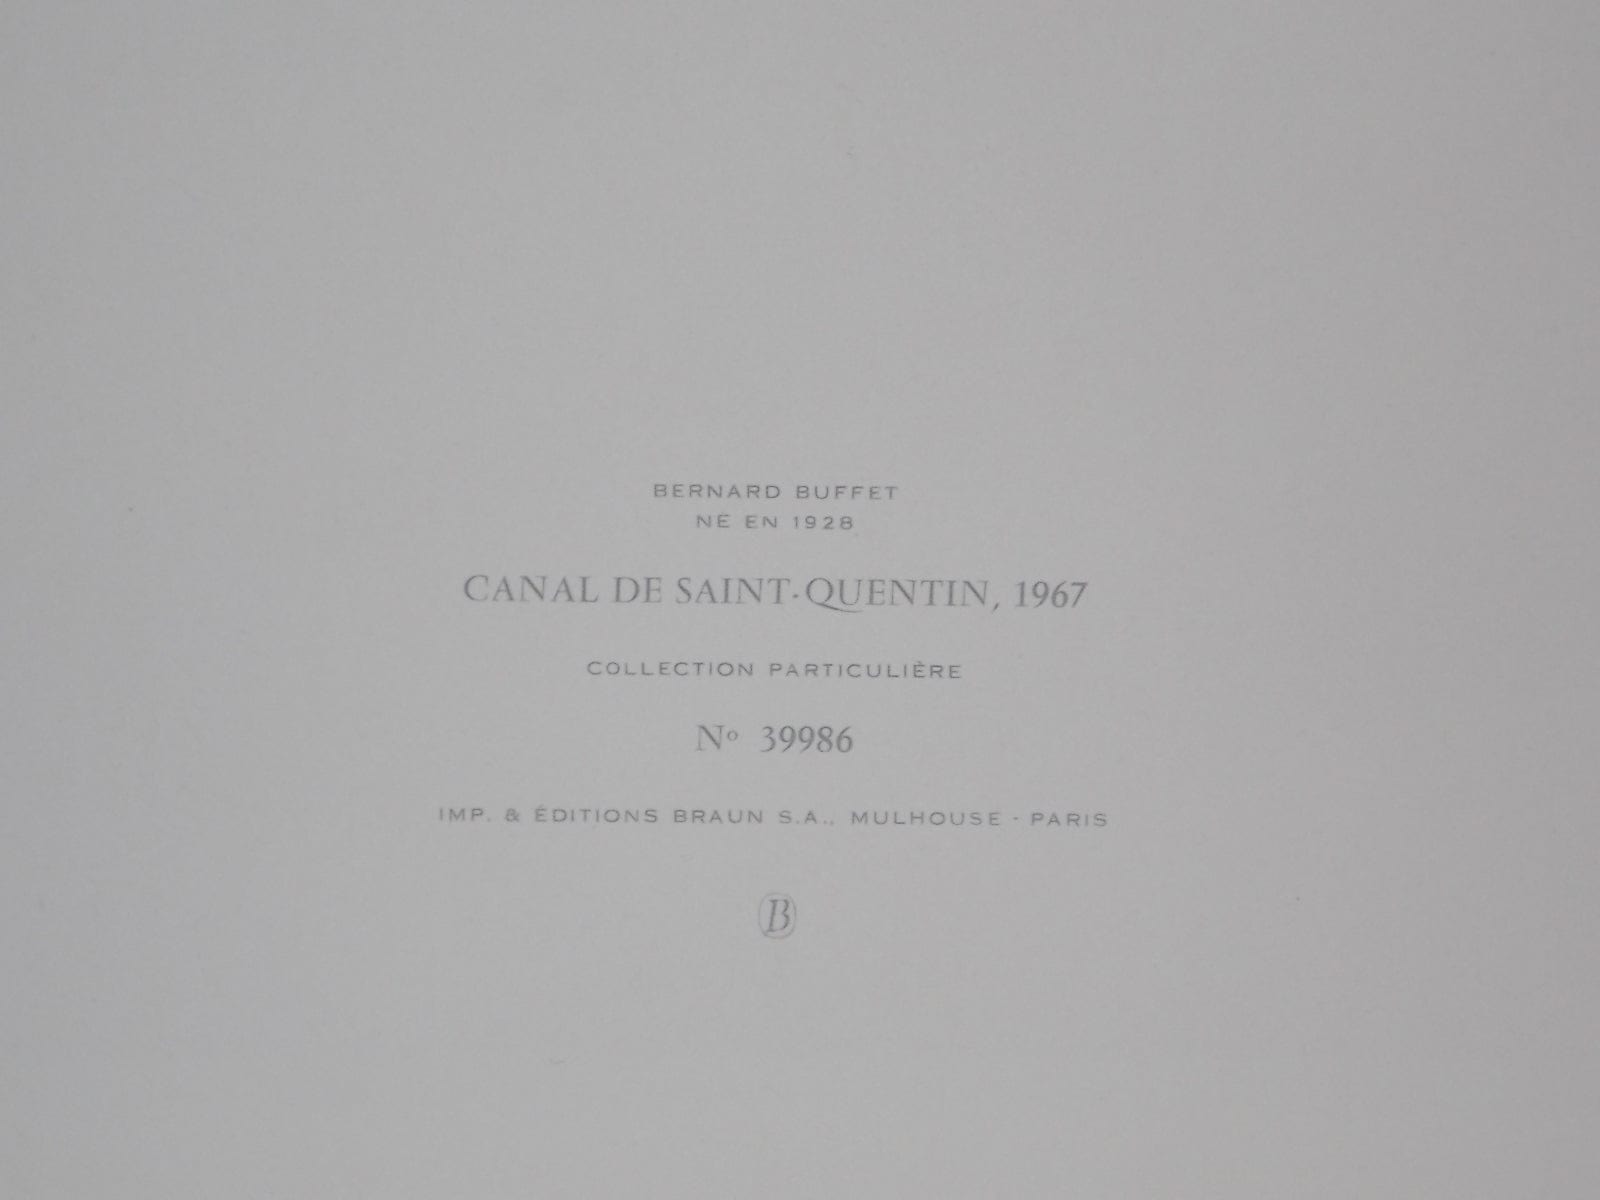 I Like Mike's Mid-Century Modern Wall Decor & Art Original Print Canal de San Quentin by Bernard Buffet 1967, Unframed